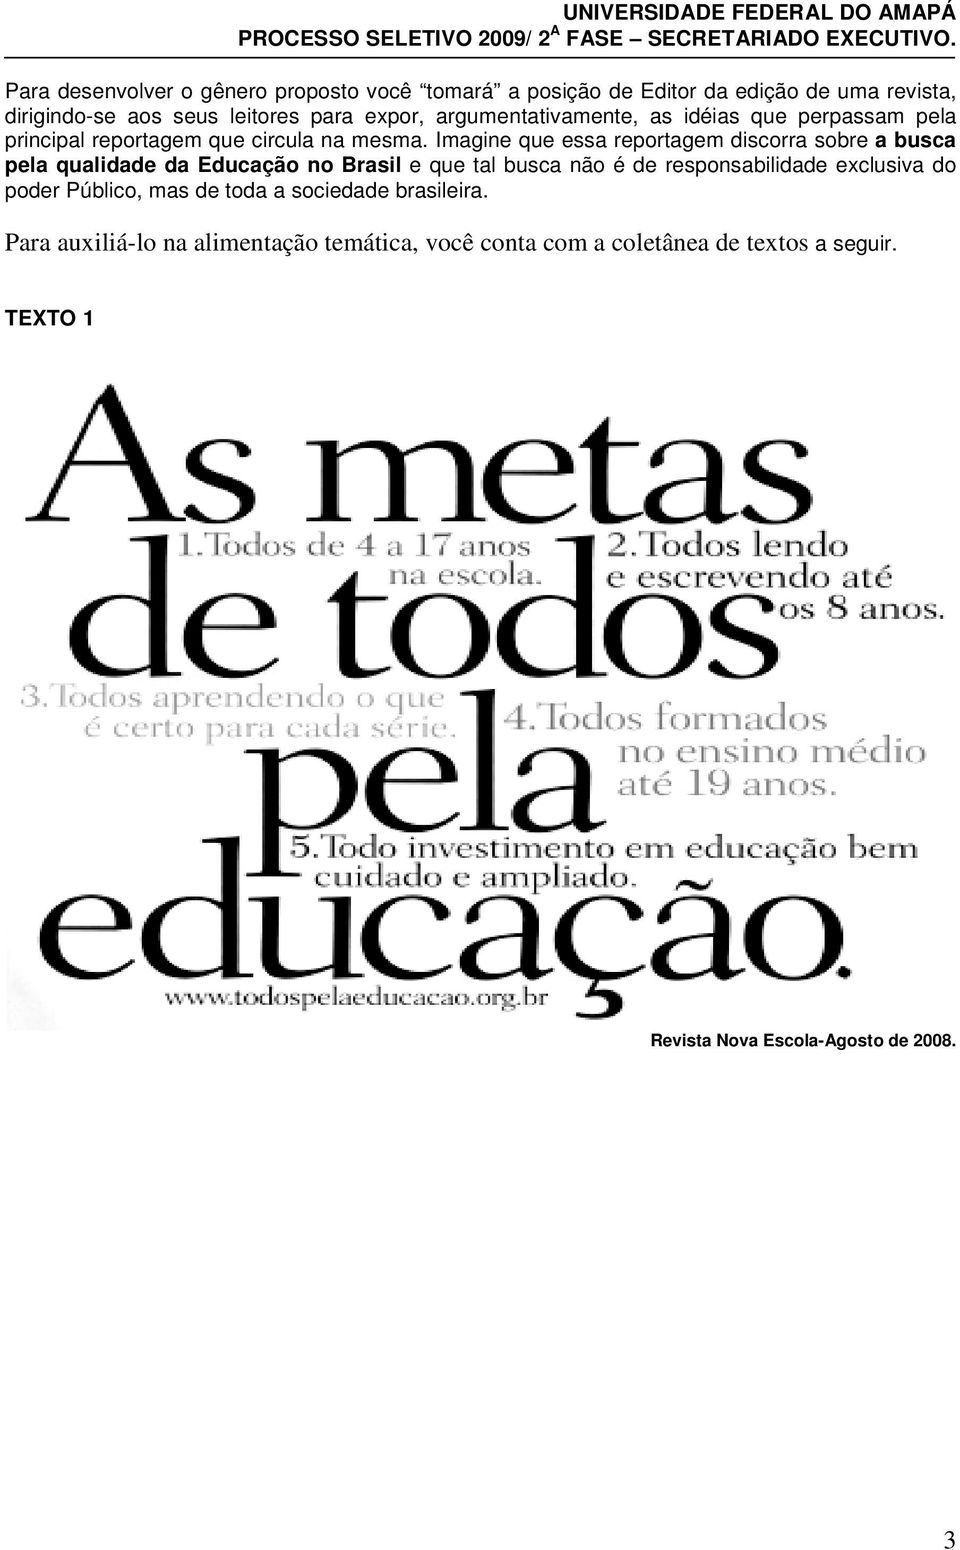 Imagine que essa reportagem discorra sobre a busca pela qualidade da Educação no Brasil e que tal busca não é de responsabilidade